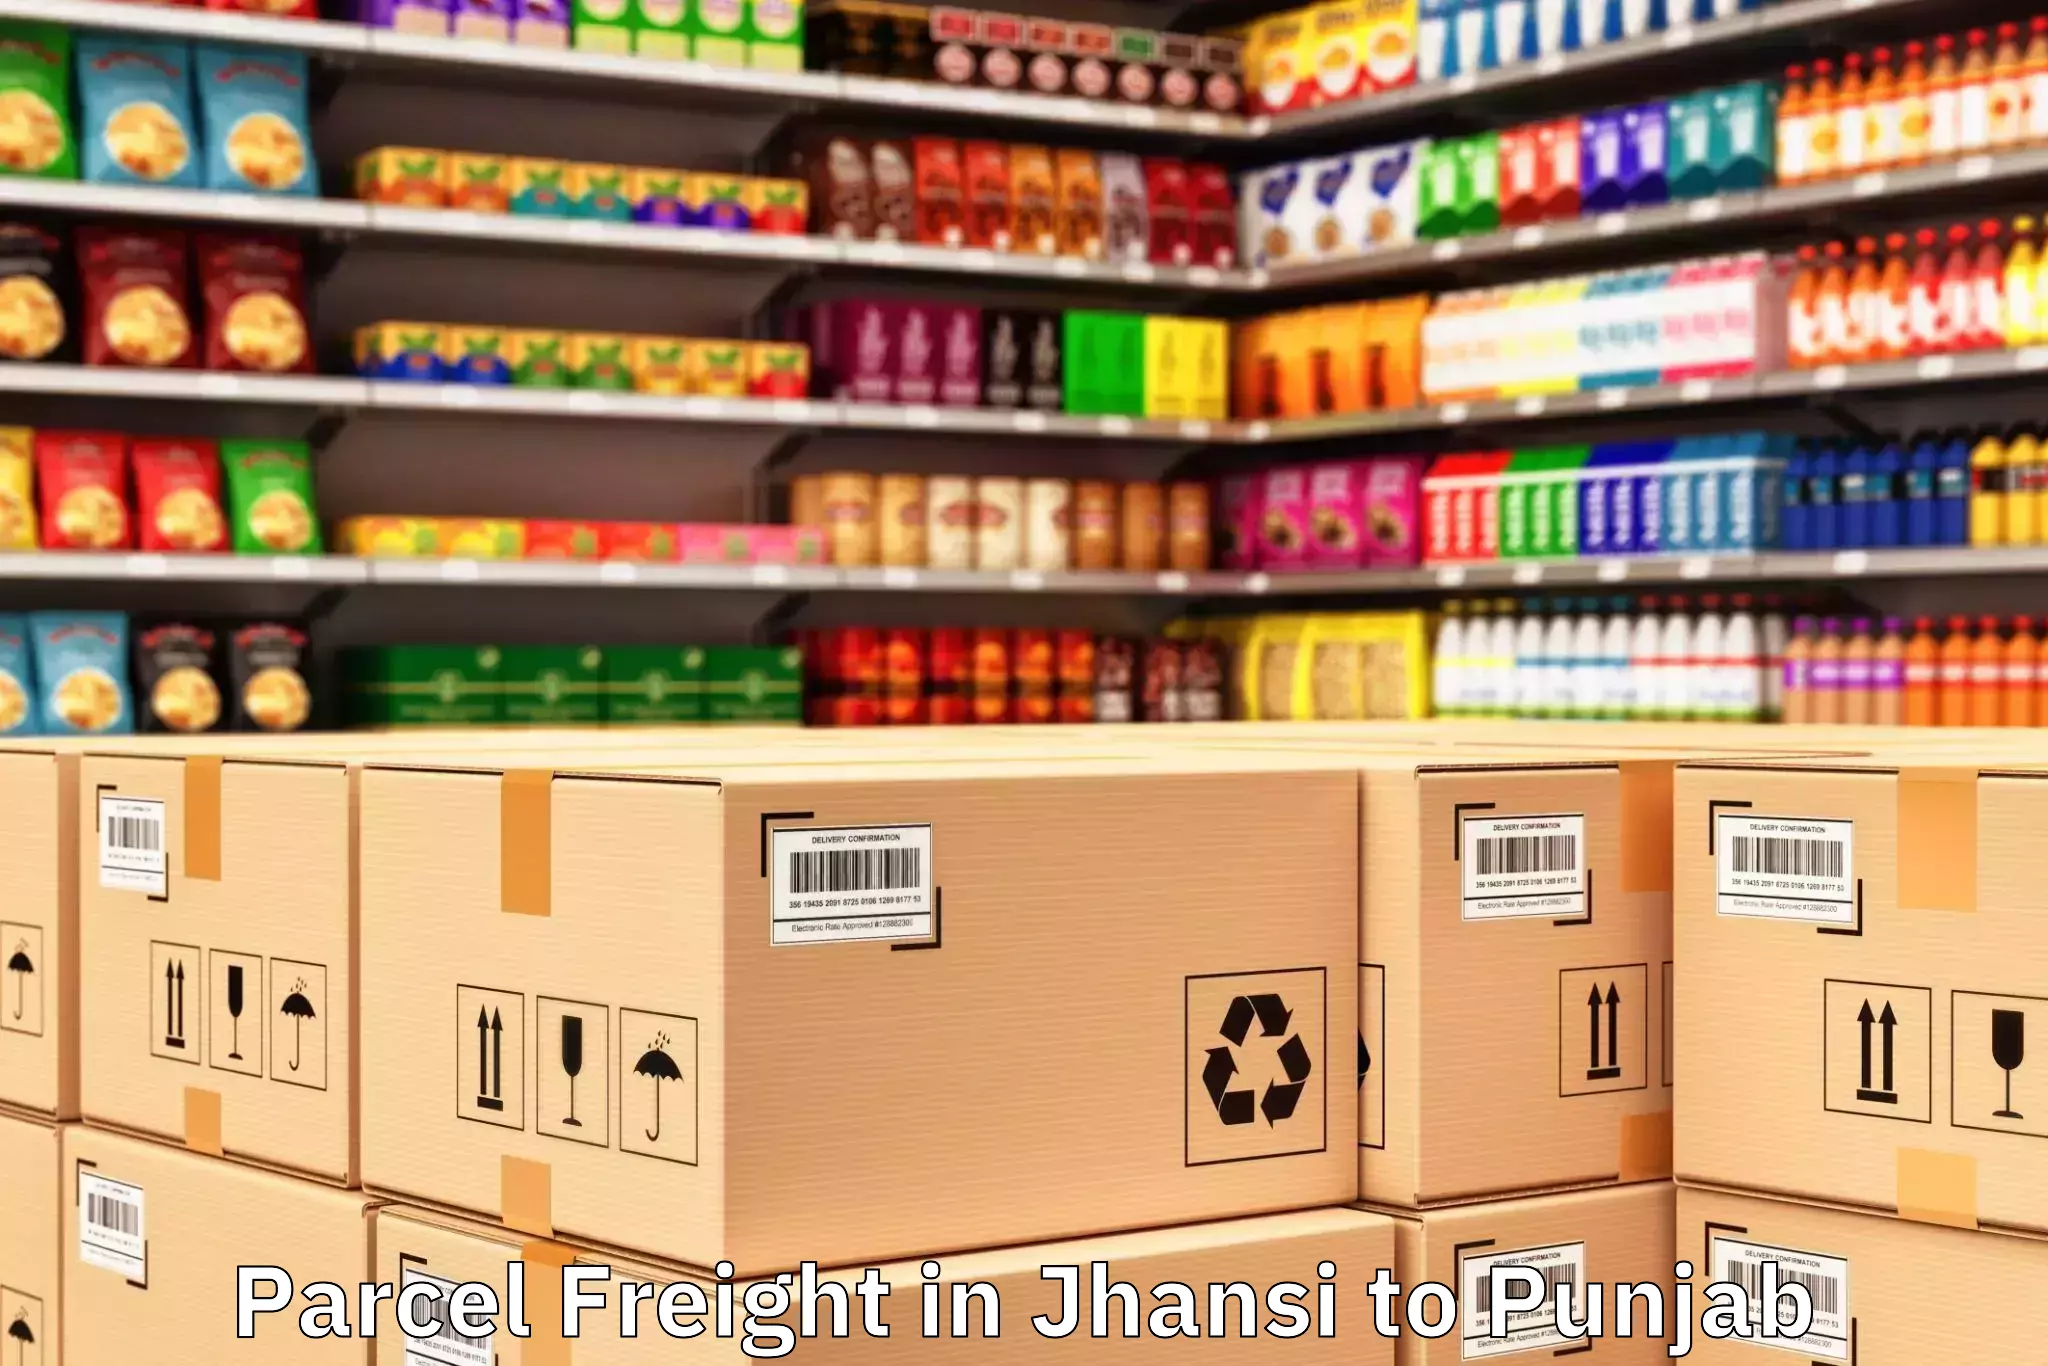 Professional Jhansi to Punjab Parcel Freight